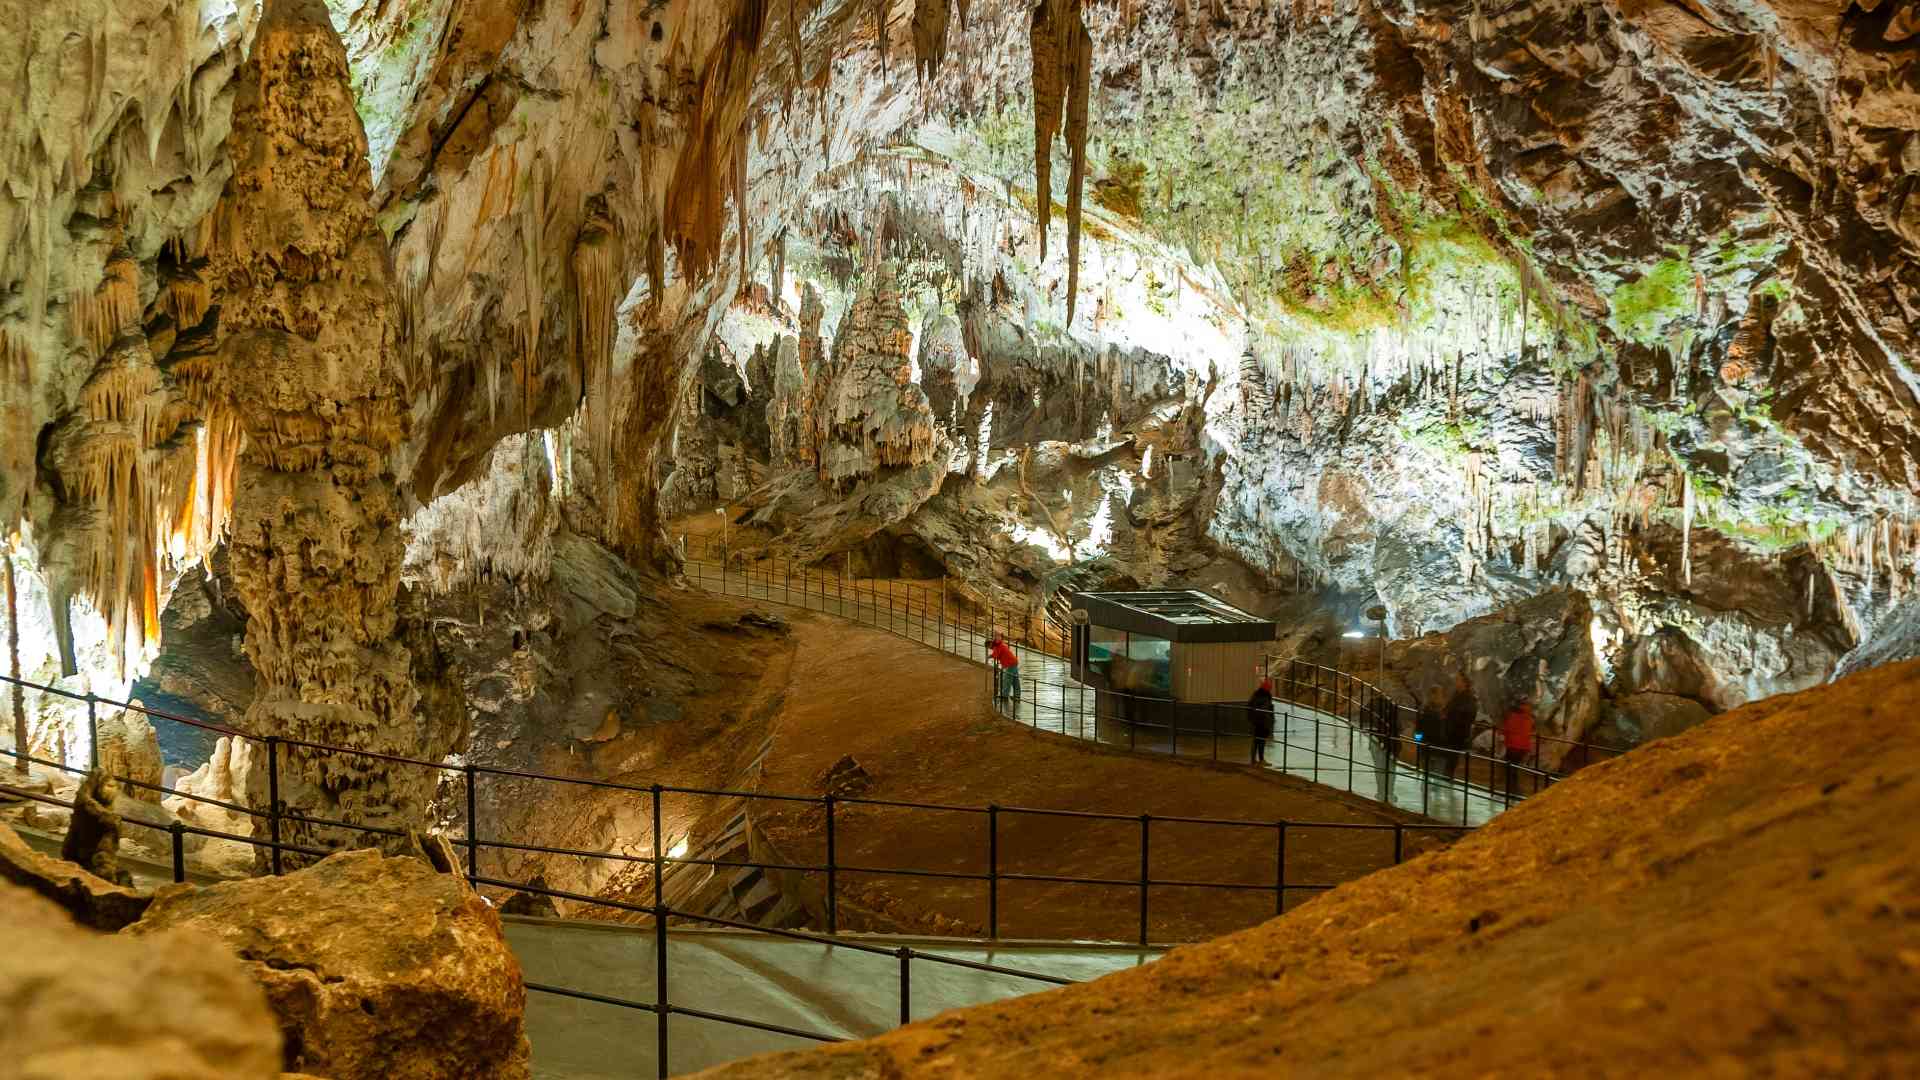 Höhle von Postojna | 24 Kilometer großes Geflecht aus Höhlen, Galerien und Sälen, die bisher in über 200 Jahren mehr als 39 Millionen Besucher besichtigt haben. [Foto von Ivan Ivankovic]